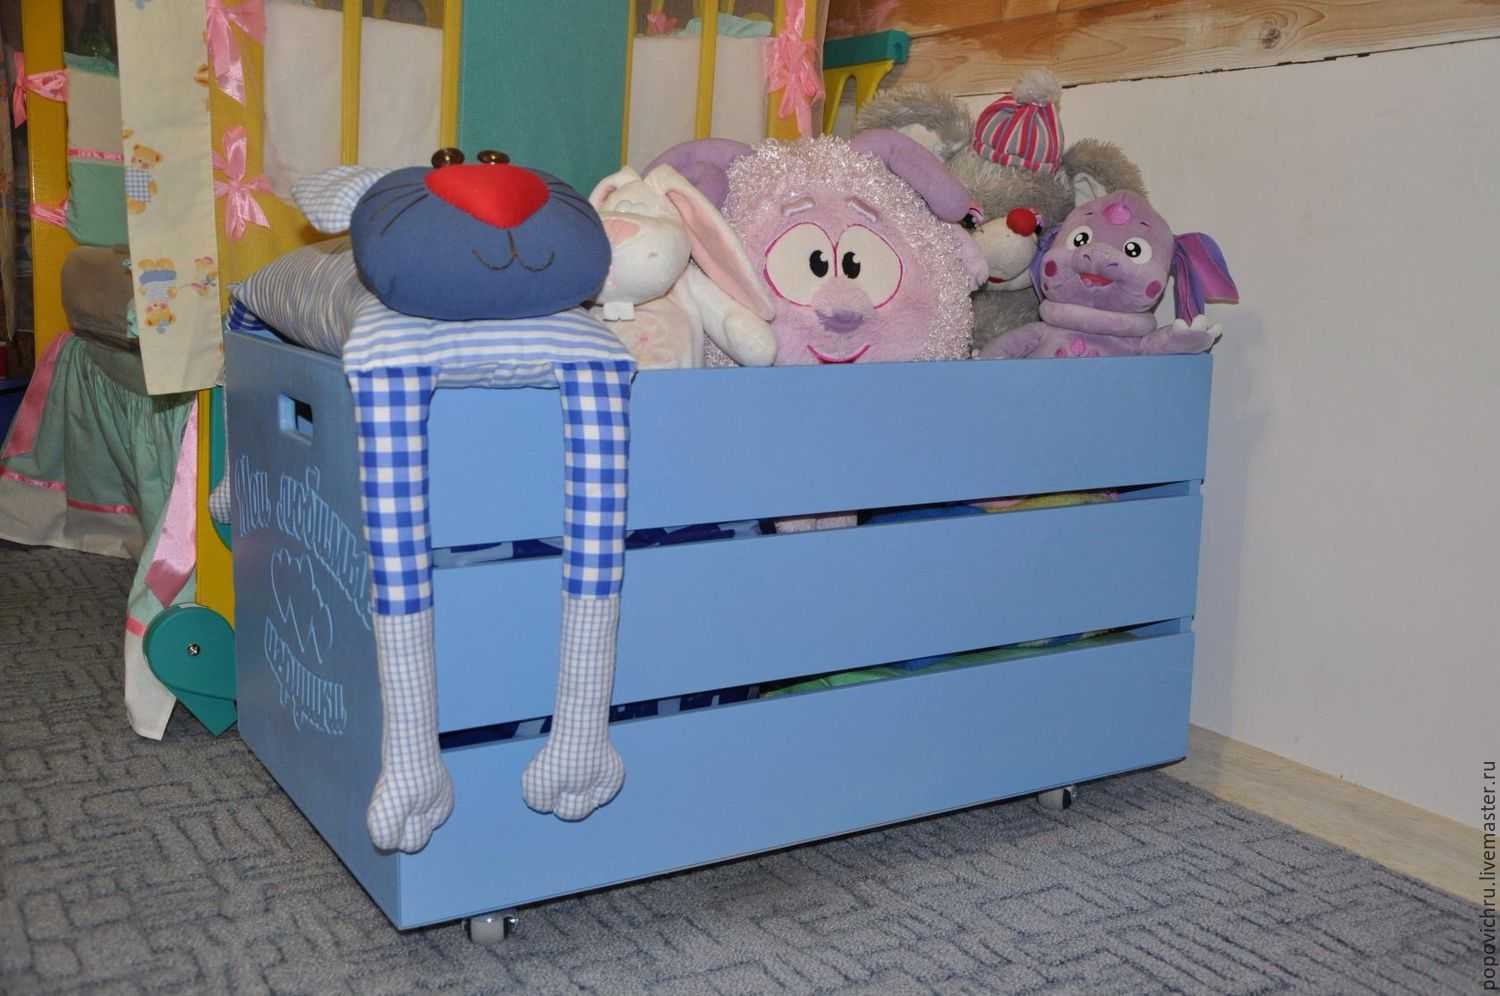 Как организовать хранение игрушек в детской комнате идеи для удобного и красивого размещения какая нужна мебель как и из чего сделать коробки для игрушек